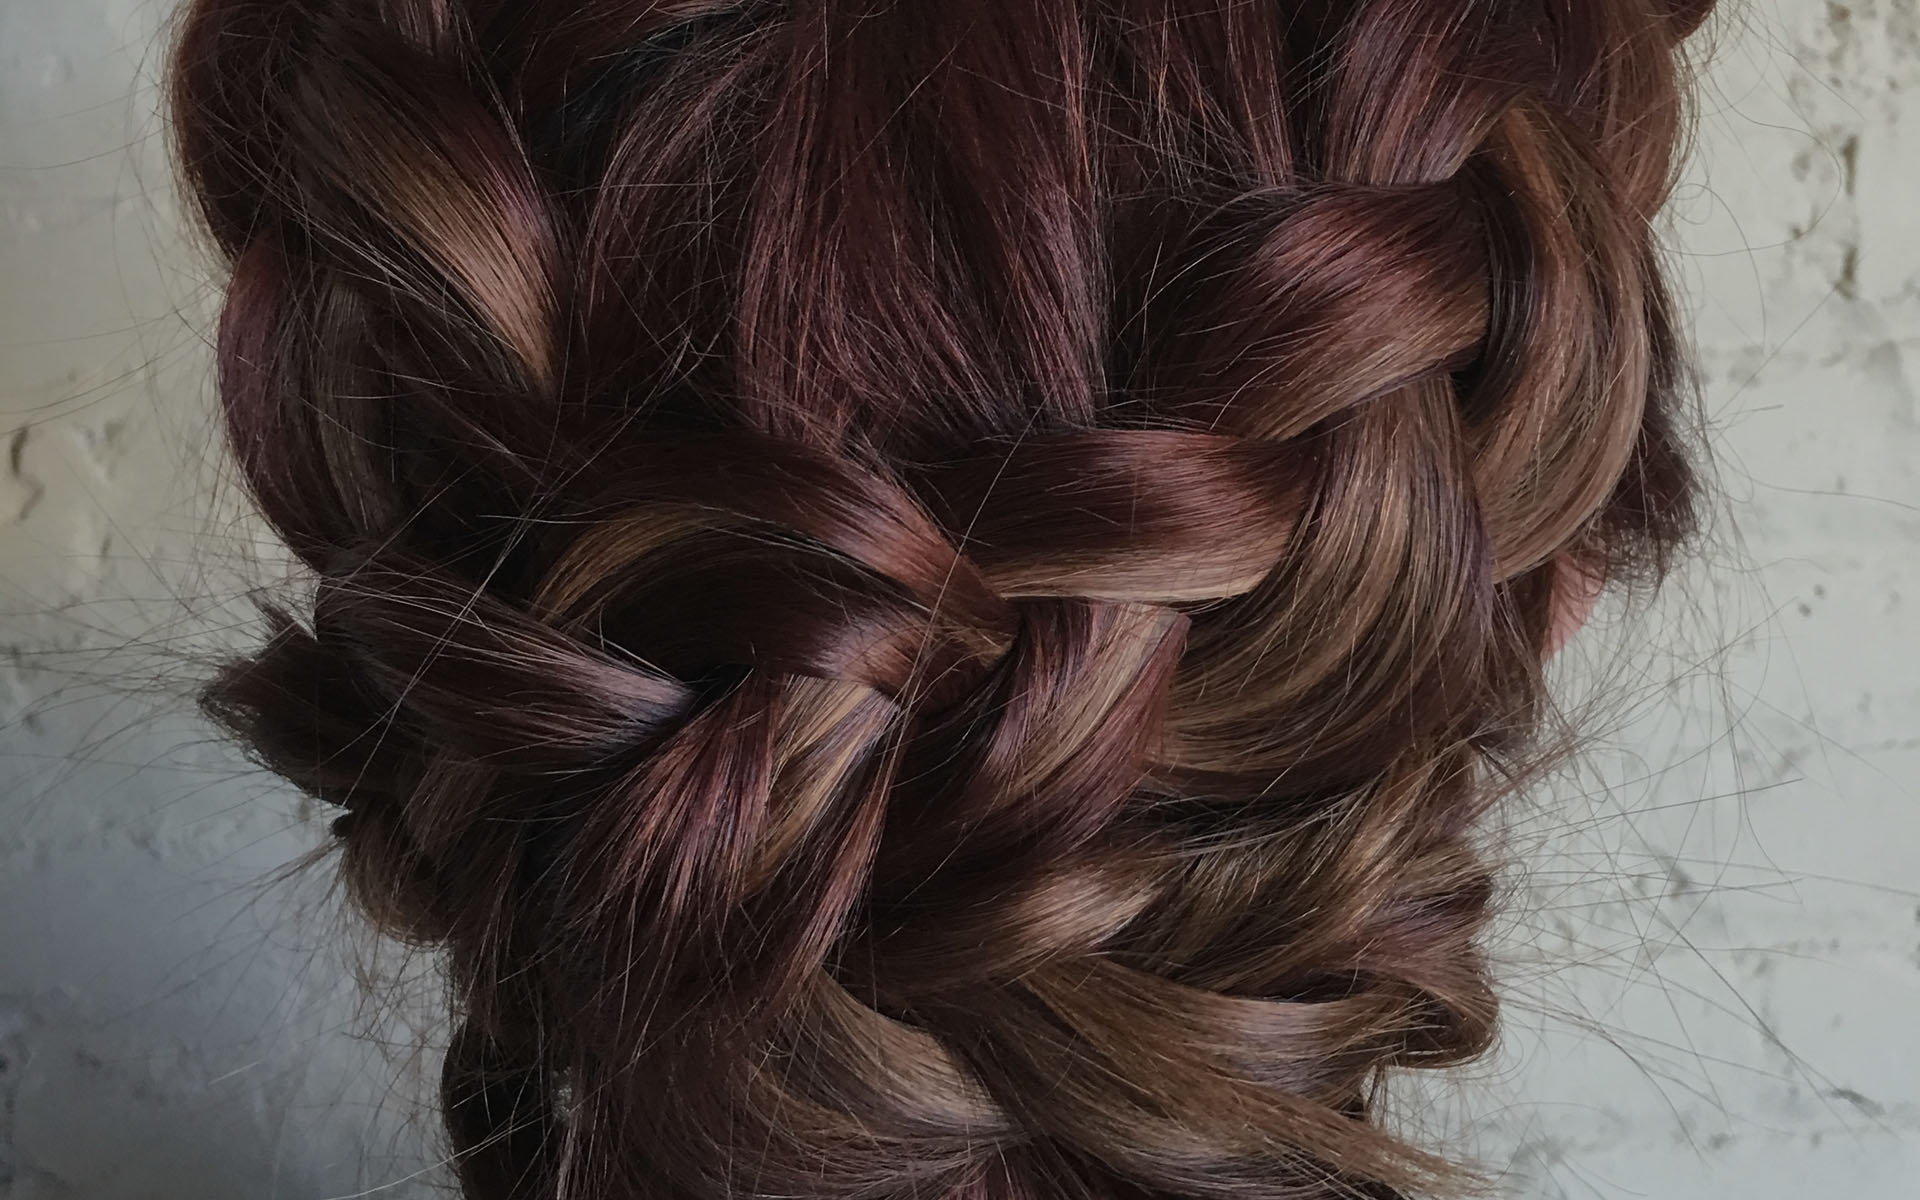 hair-braids-with-dark-overlay